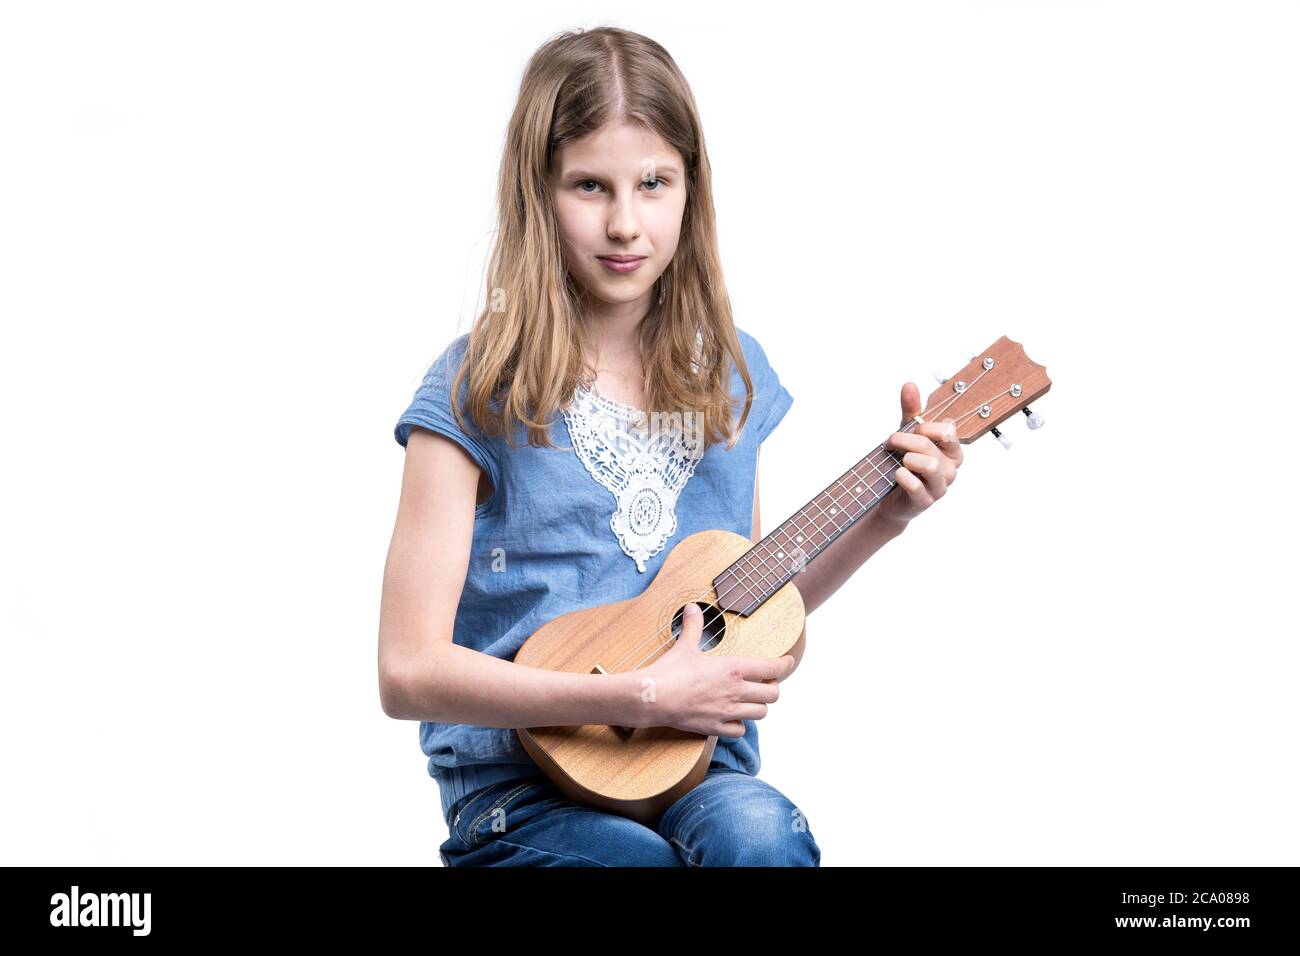 Junge, blonde Mädchen in blauem T-Shirt spielt Konzert auf Ukulele-Instrument. Stockfoto